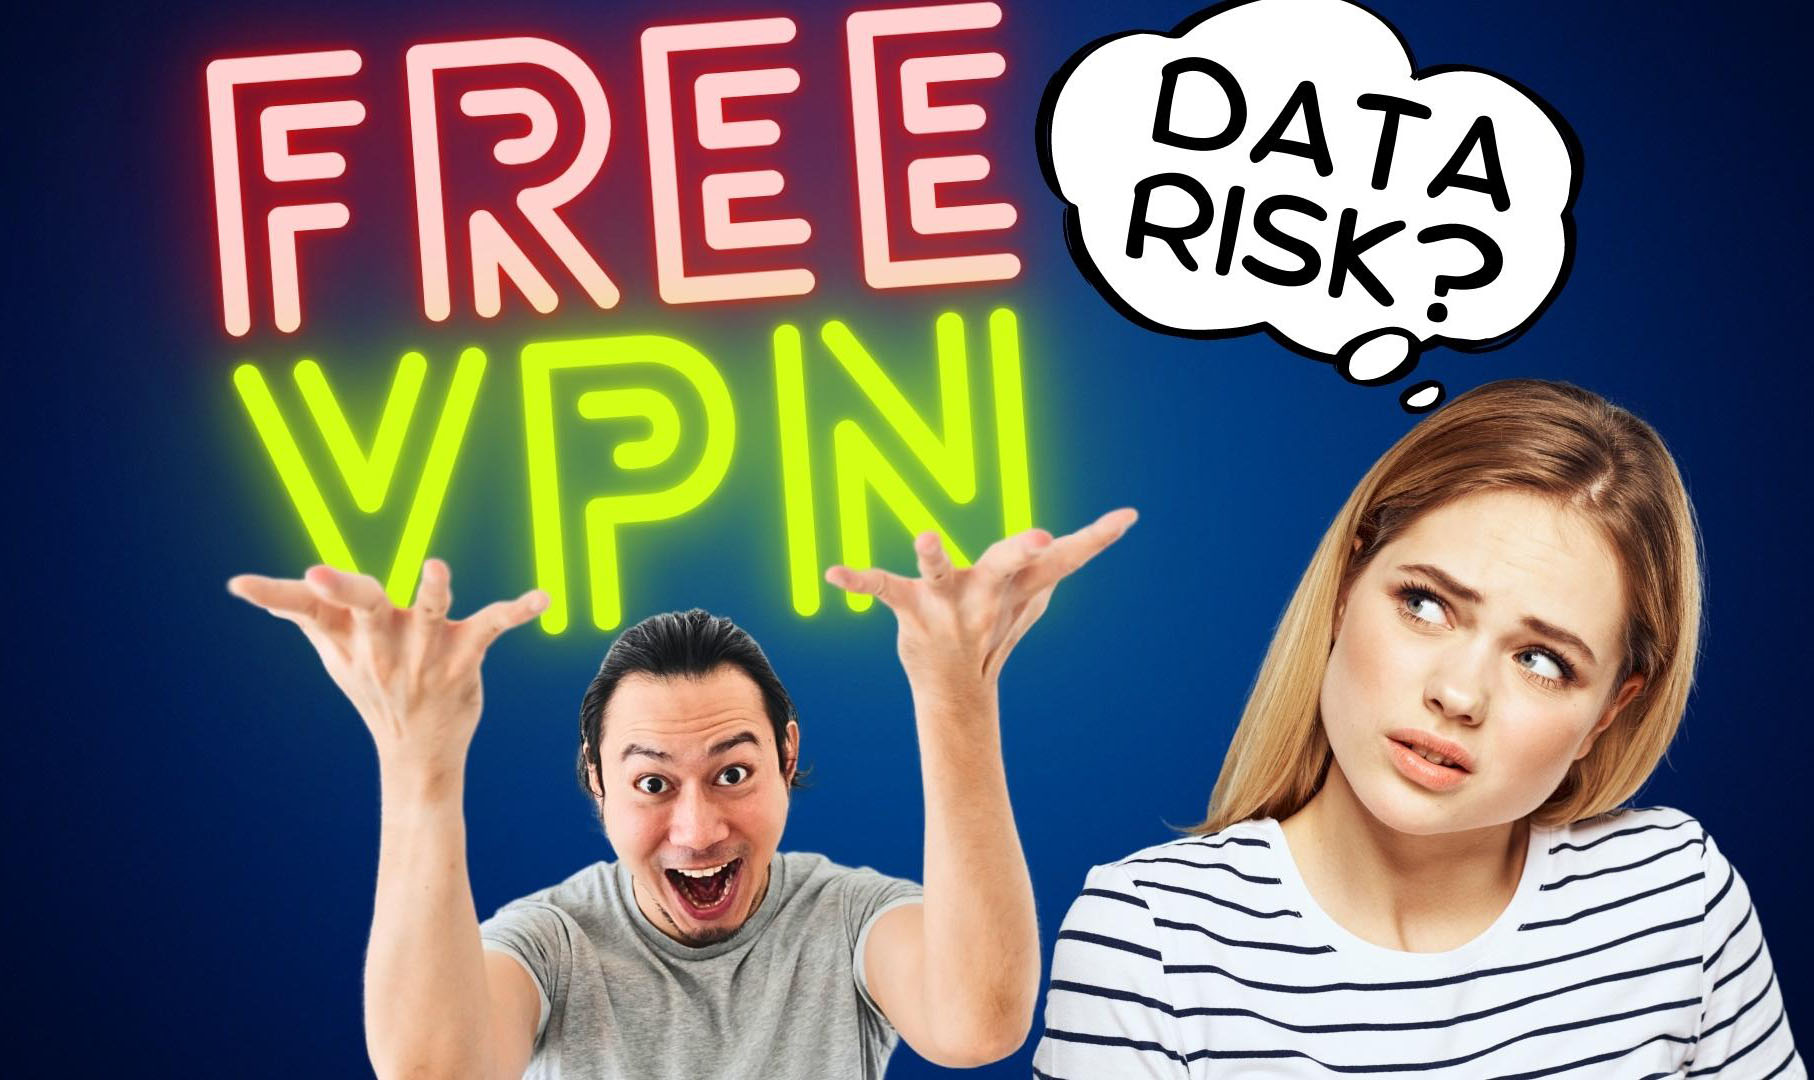 The hidden dangers of free VPNs